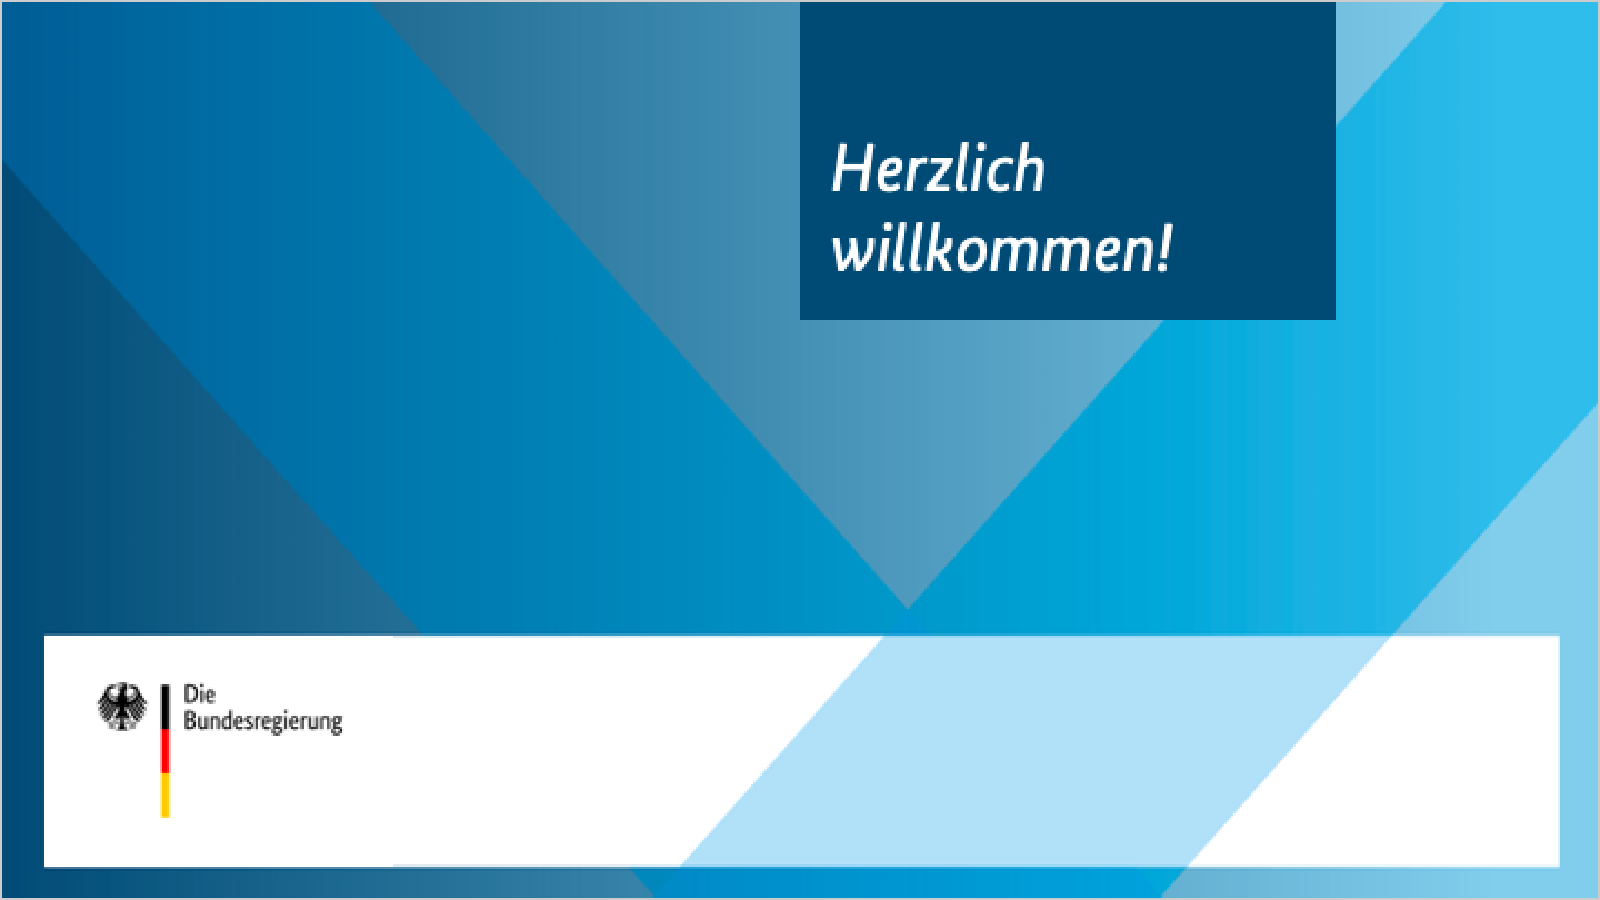 Blauer Fond mit Banderole, Identitätsbereich unten mit Bildwortmarke links. Oben Dunkelblauer Kasten mit Text: Herzlich willkommen.